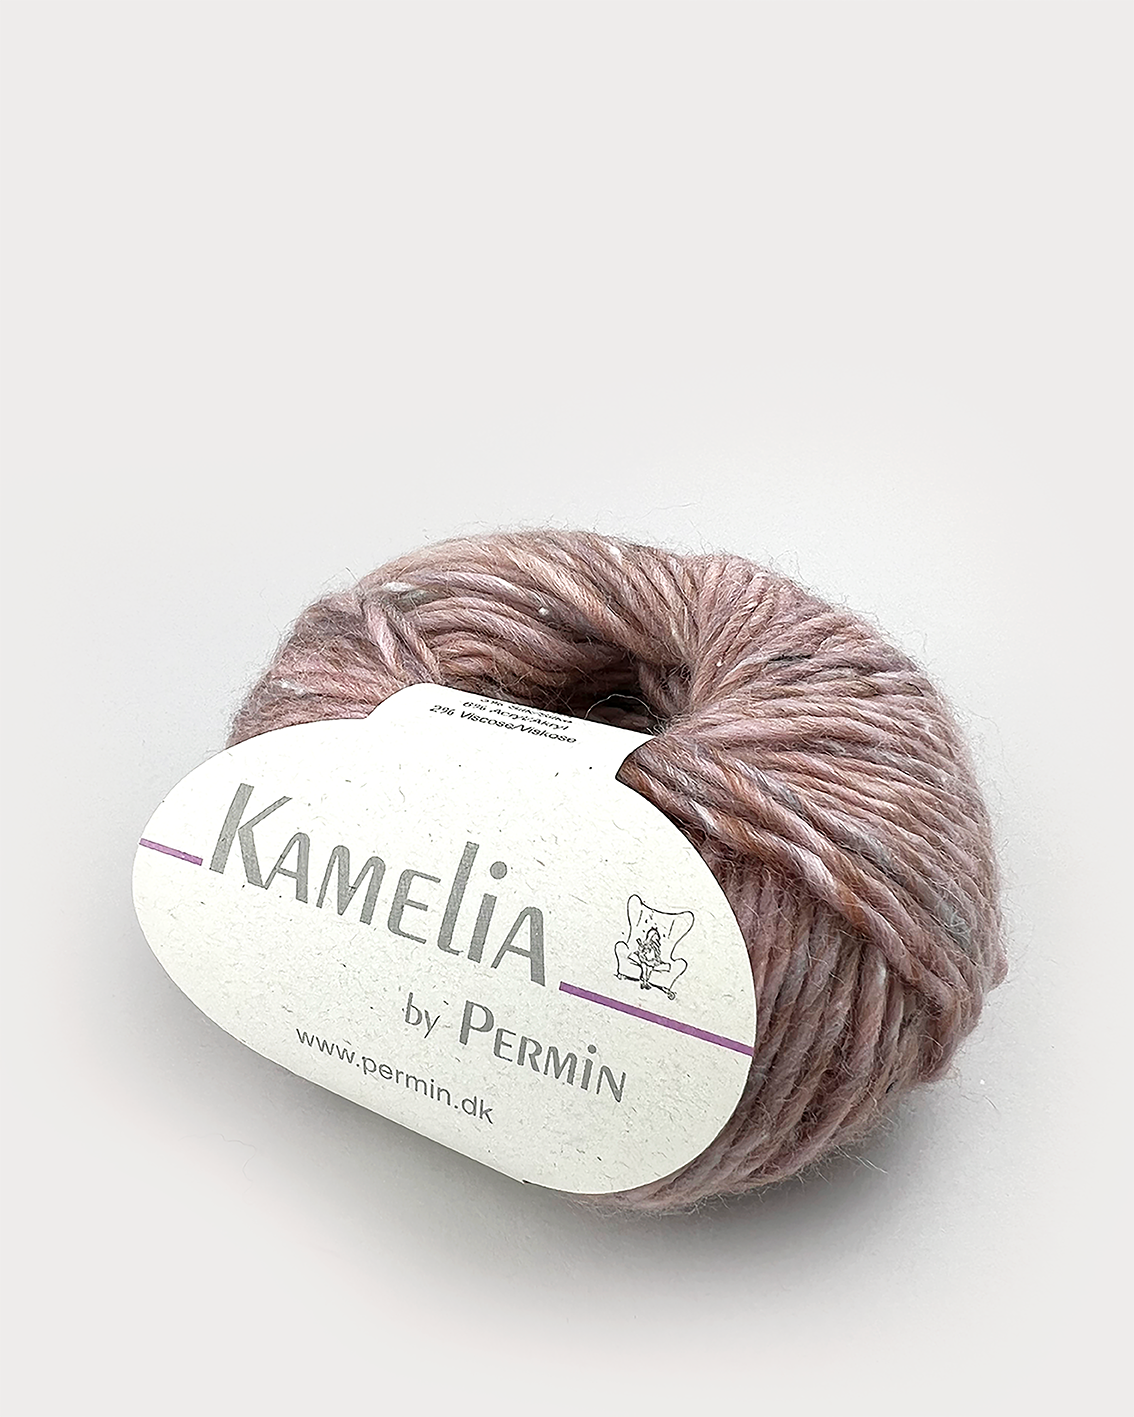 Kamelia by Permin